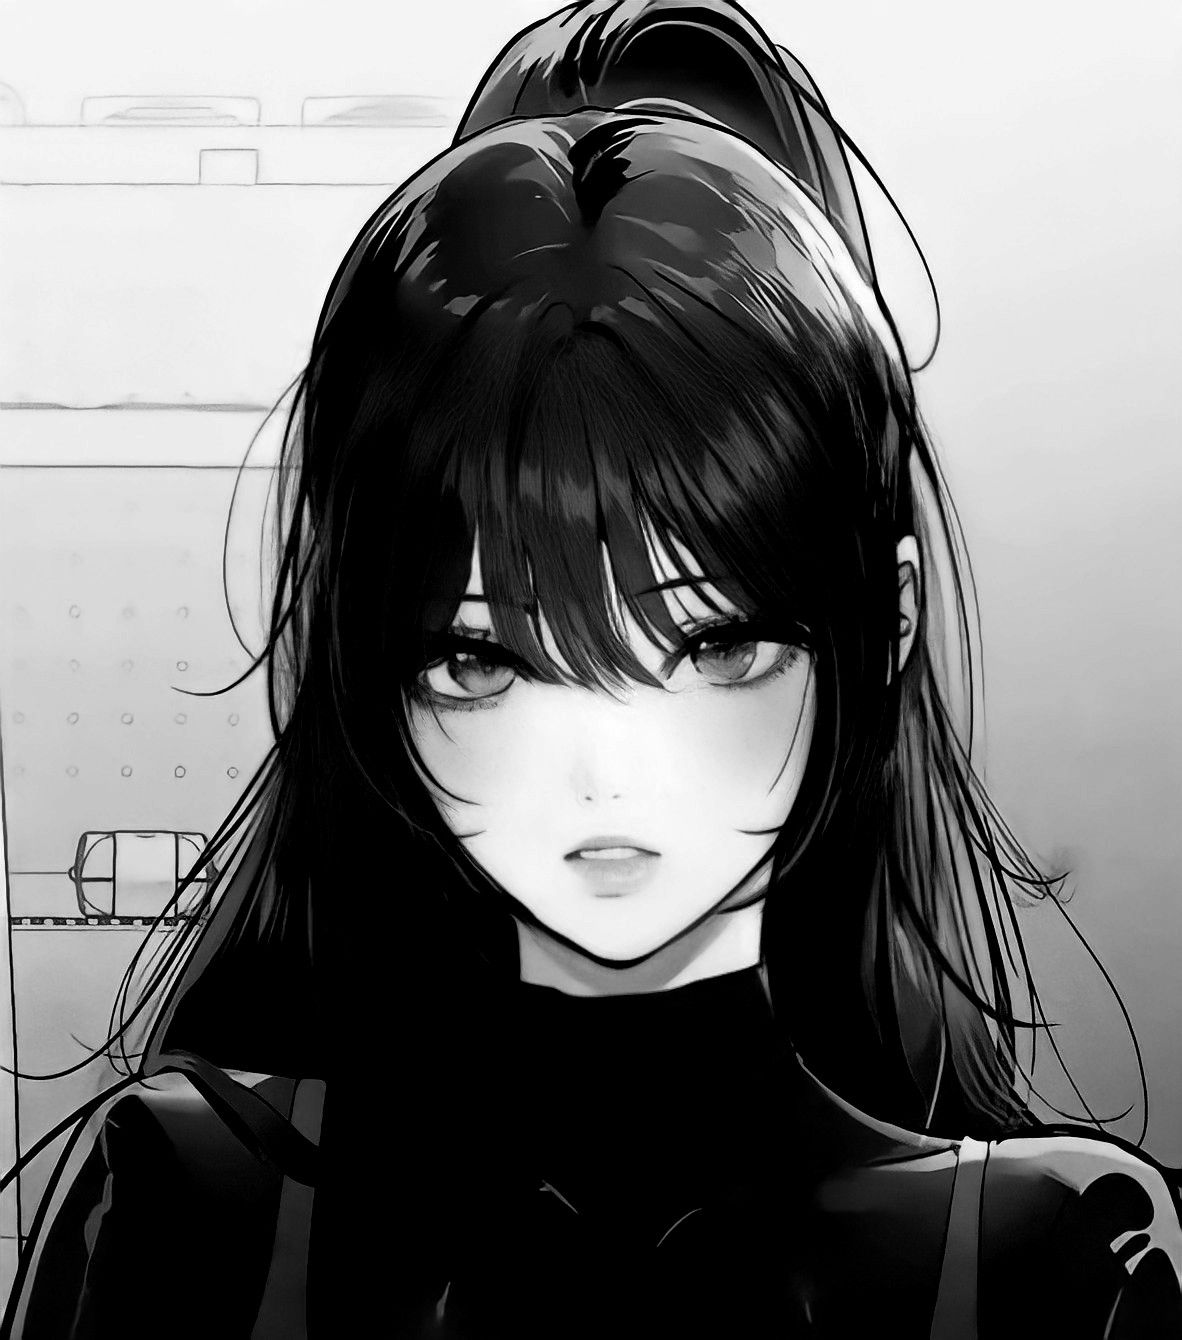 Hình avatar Anime đen trắng tuyệt đẹp